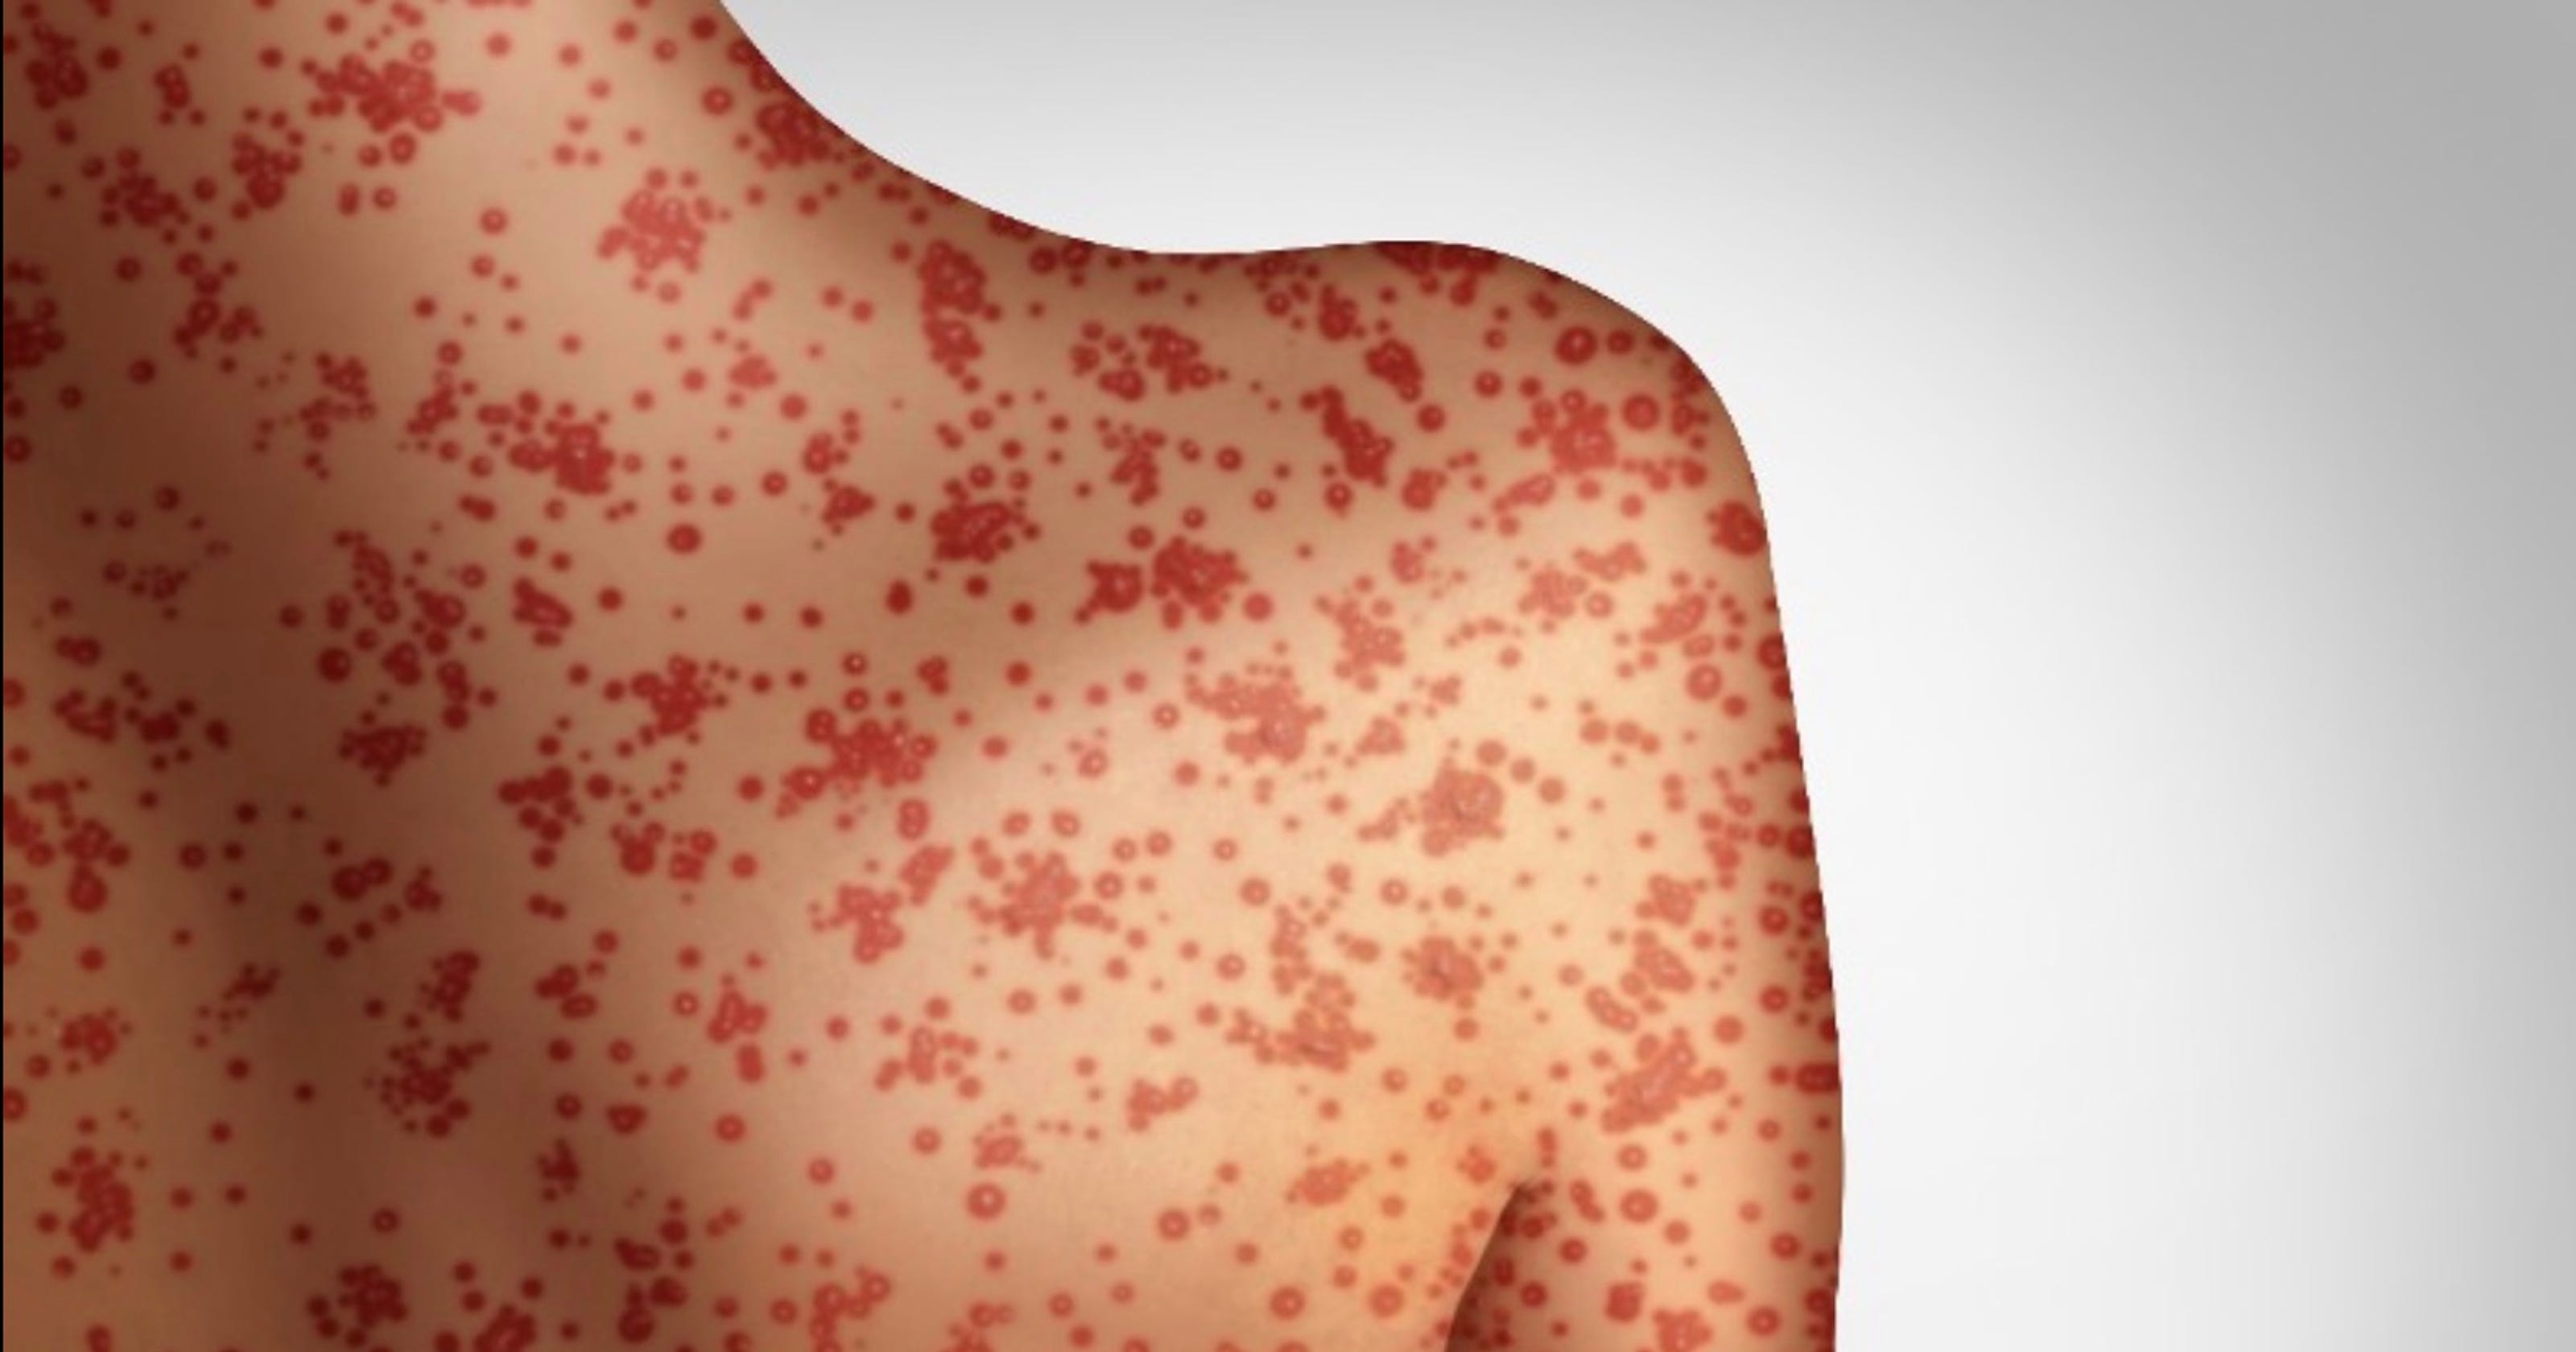 measles symptoms